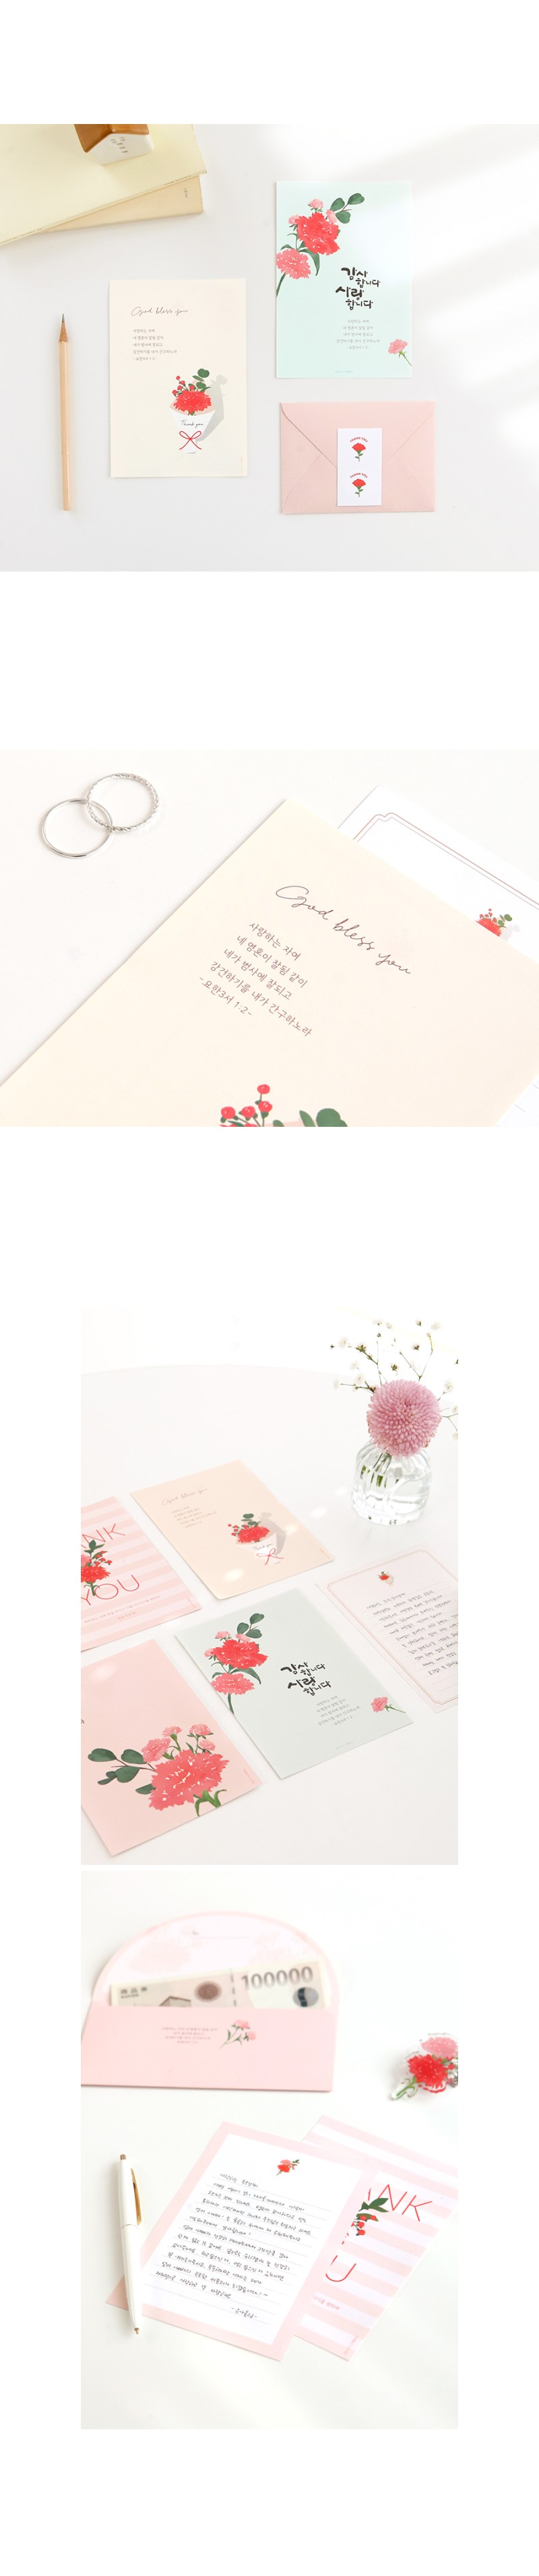 240401_gb_carnations_letter_04.jpg